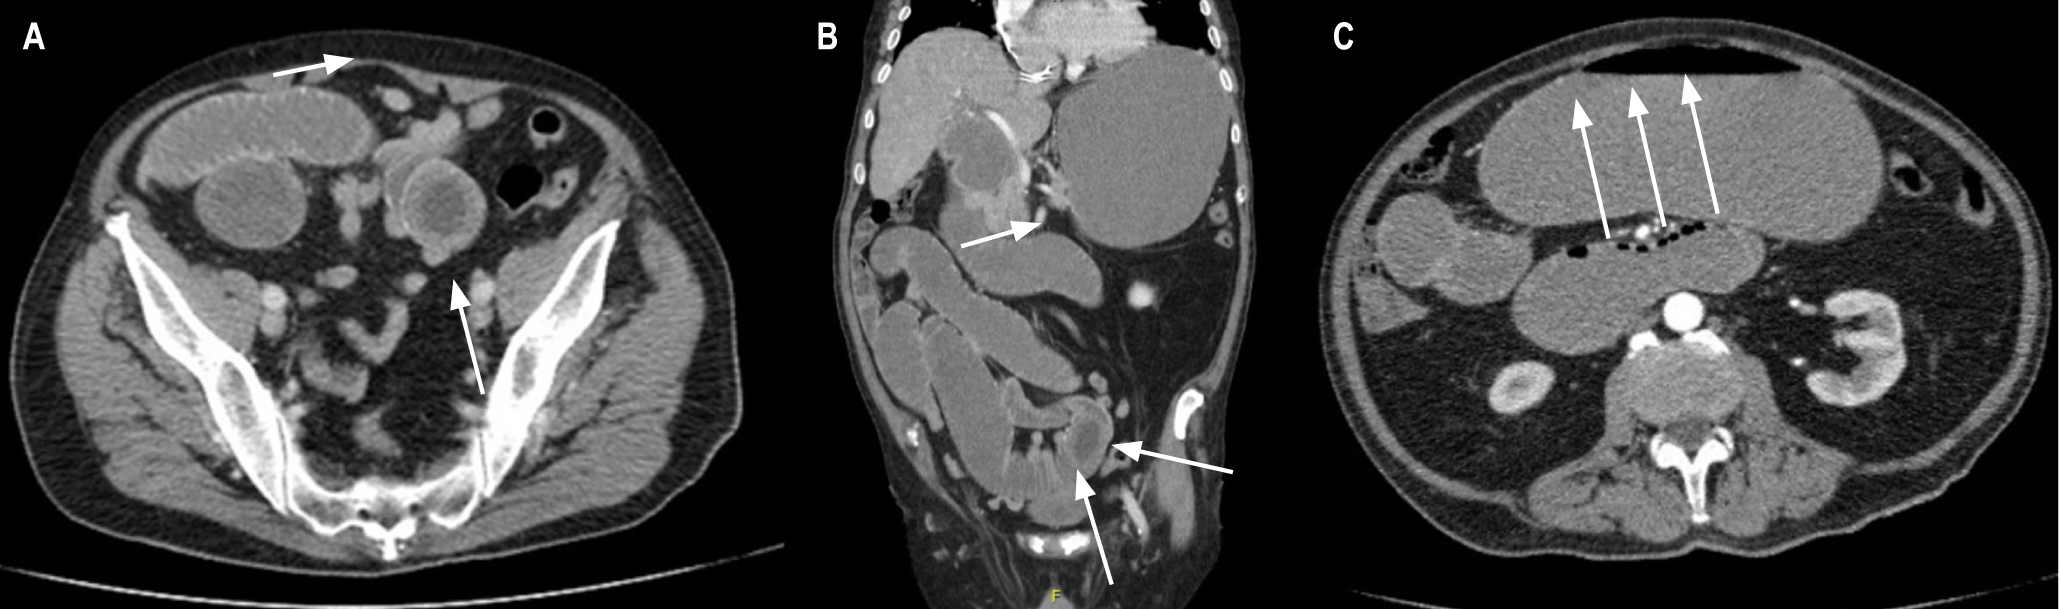 Figura 1. A y B. Imagen en diana de tomografía abdominal sugestiva de obstrucción intestinal por intususcepción. C. Imagen de collar de perlas sugestiva de obstrucción intestinal. Imágenes propiedad de los autores.